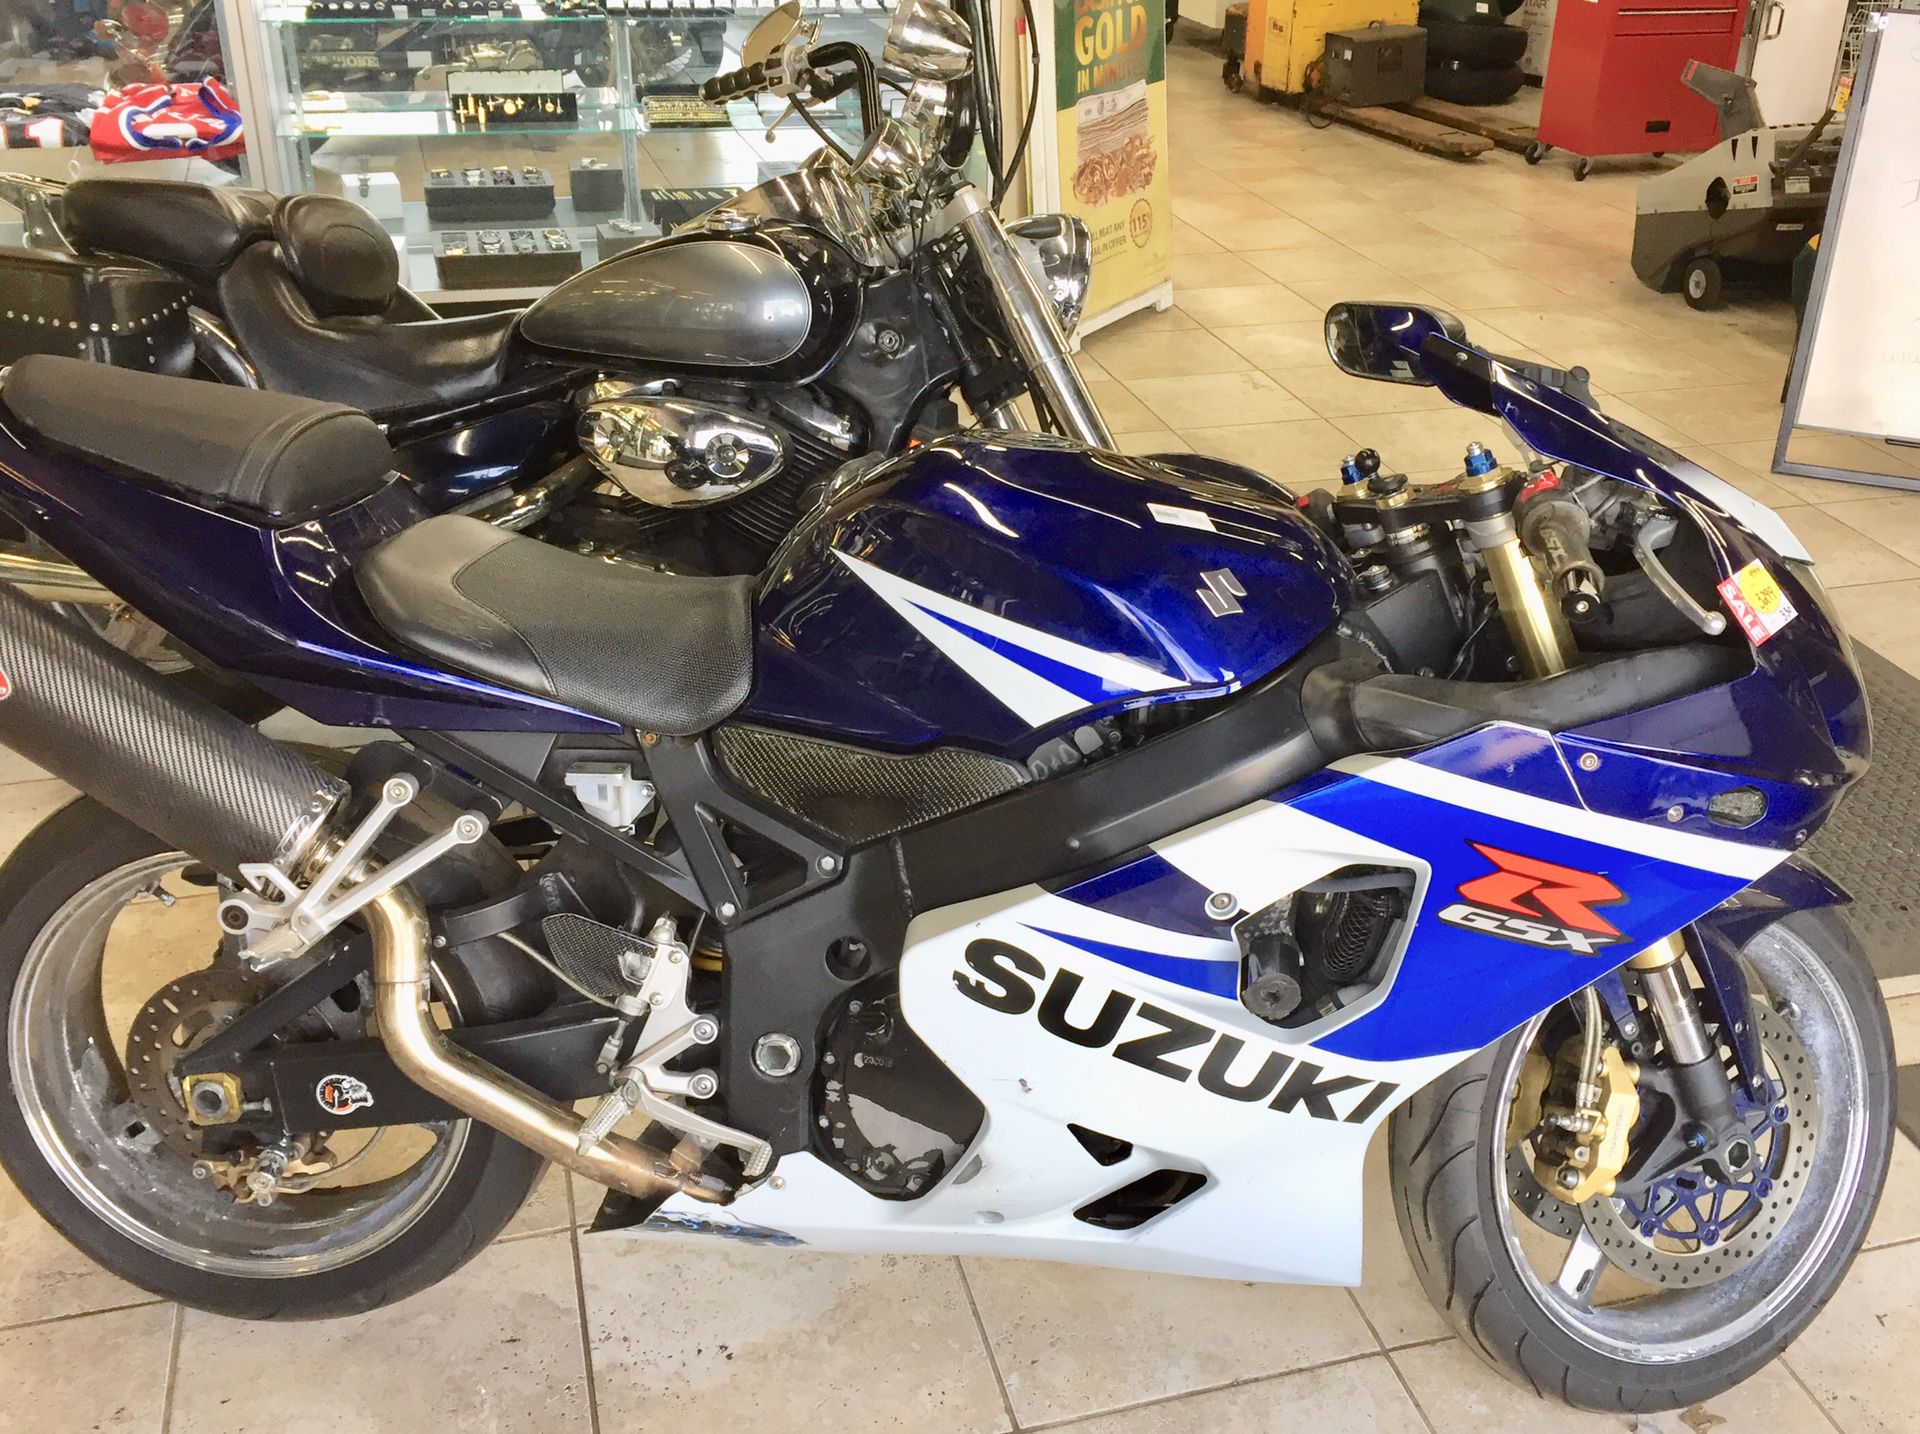 2005 Suzuki GSXR750 motorcycle, only 17011 miles